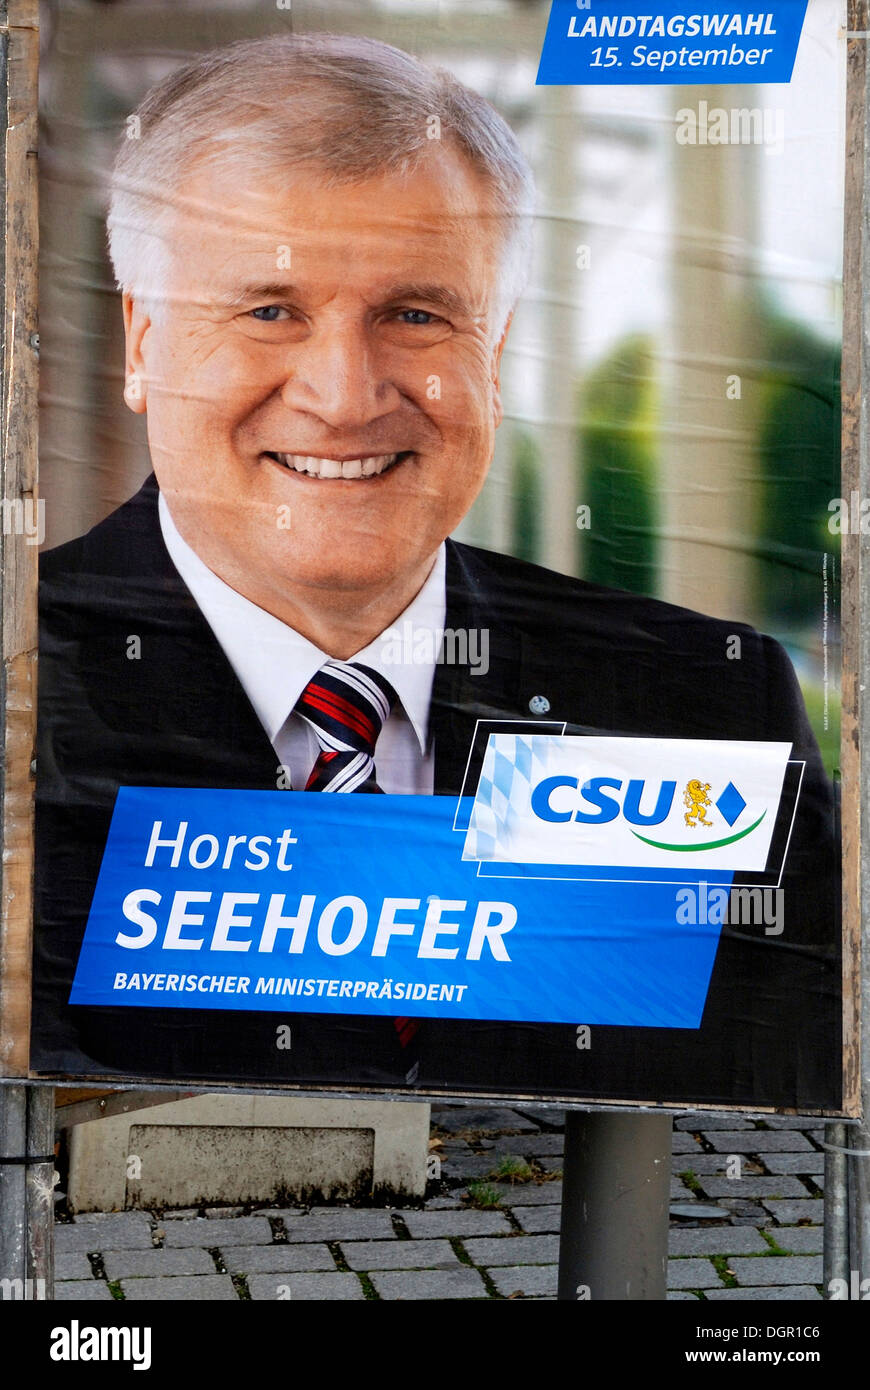 Affiche publicitaire de la CSU pour le premier ministre bavarois Horst Seehofer pour élections de l'État de Bavière sur 15.09.2013. Banque D'Images